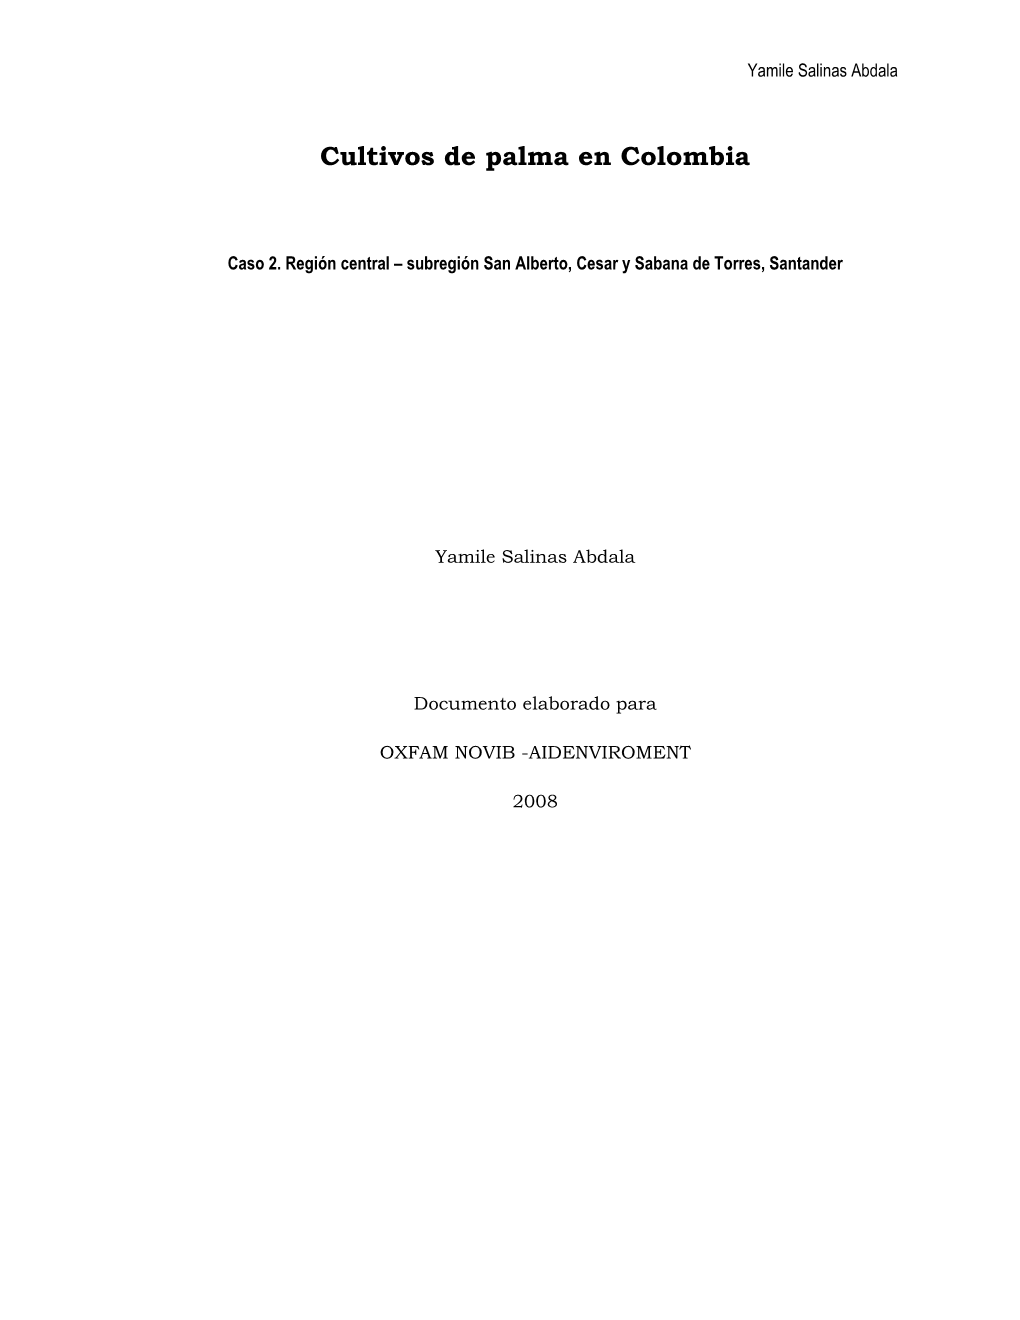 Cultivos De Palma En Colombia